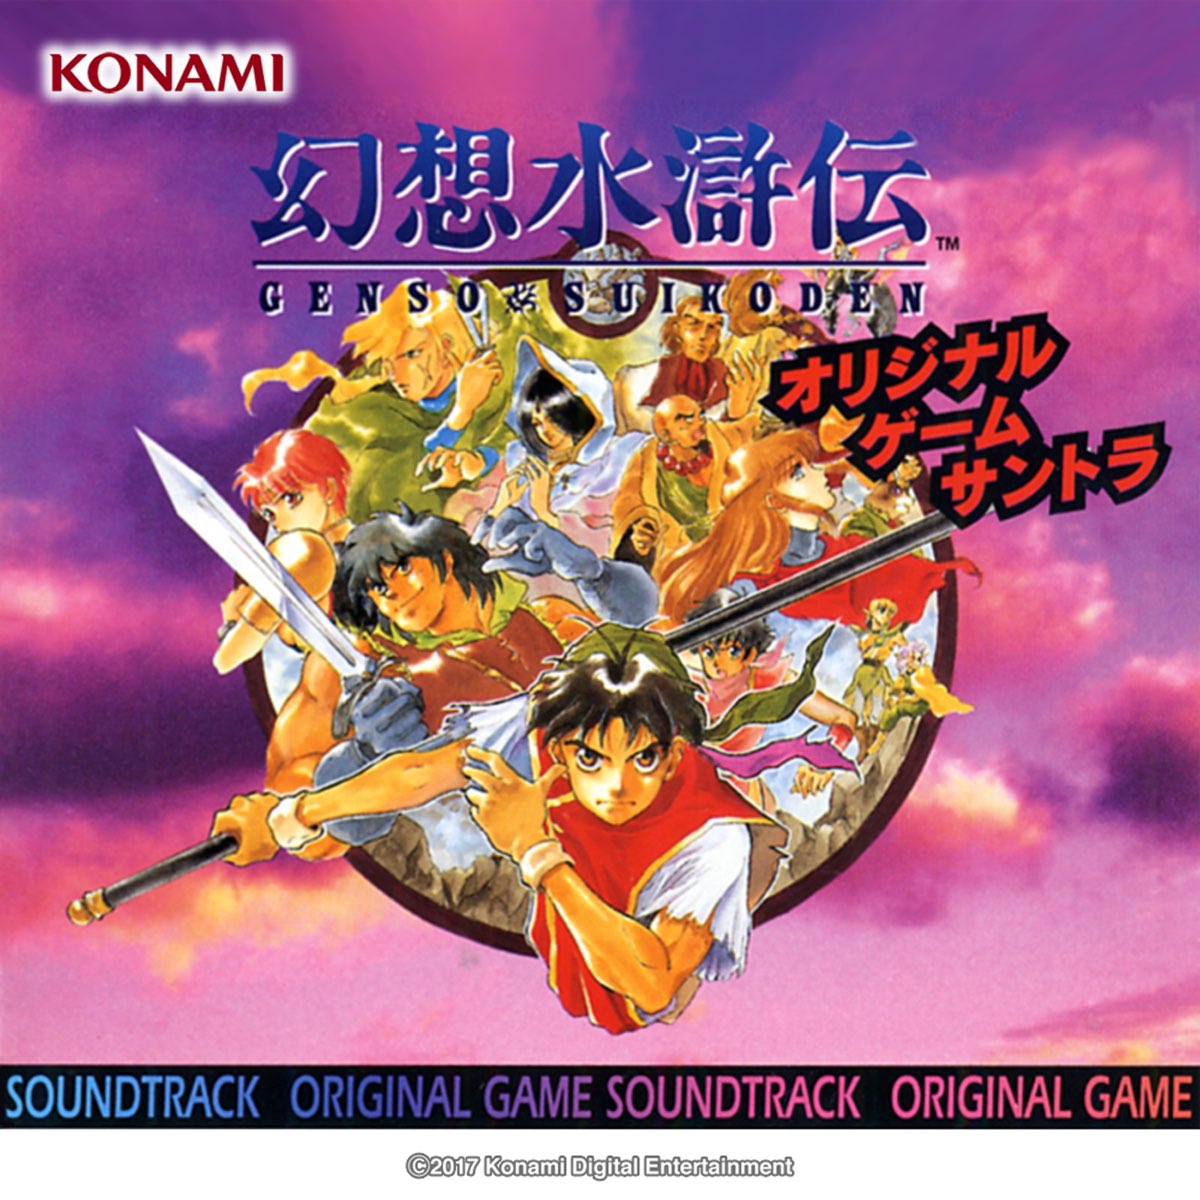 コナミ矩形波倶楽部の 幻想水滸伝 Original Game Soundtrack をapple Musicで